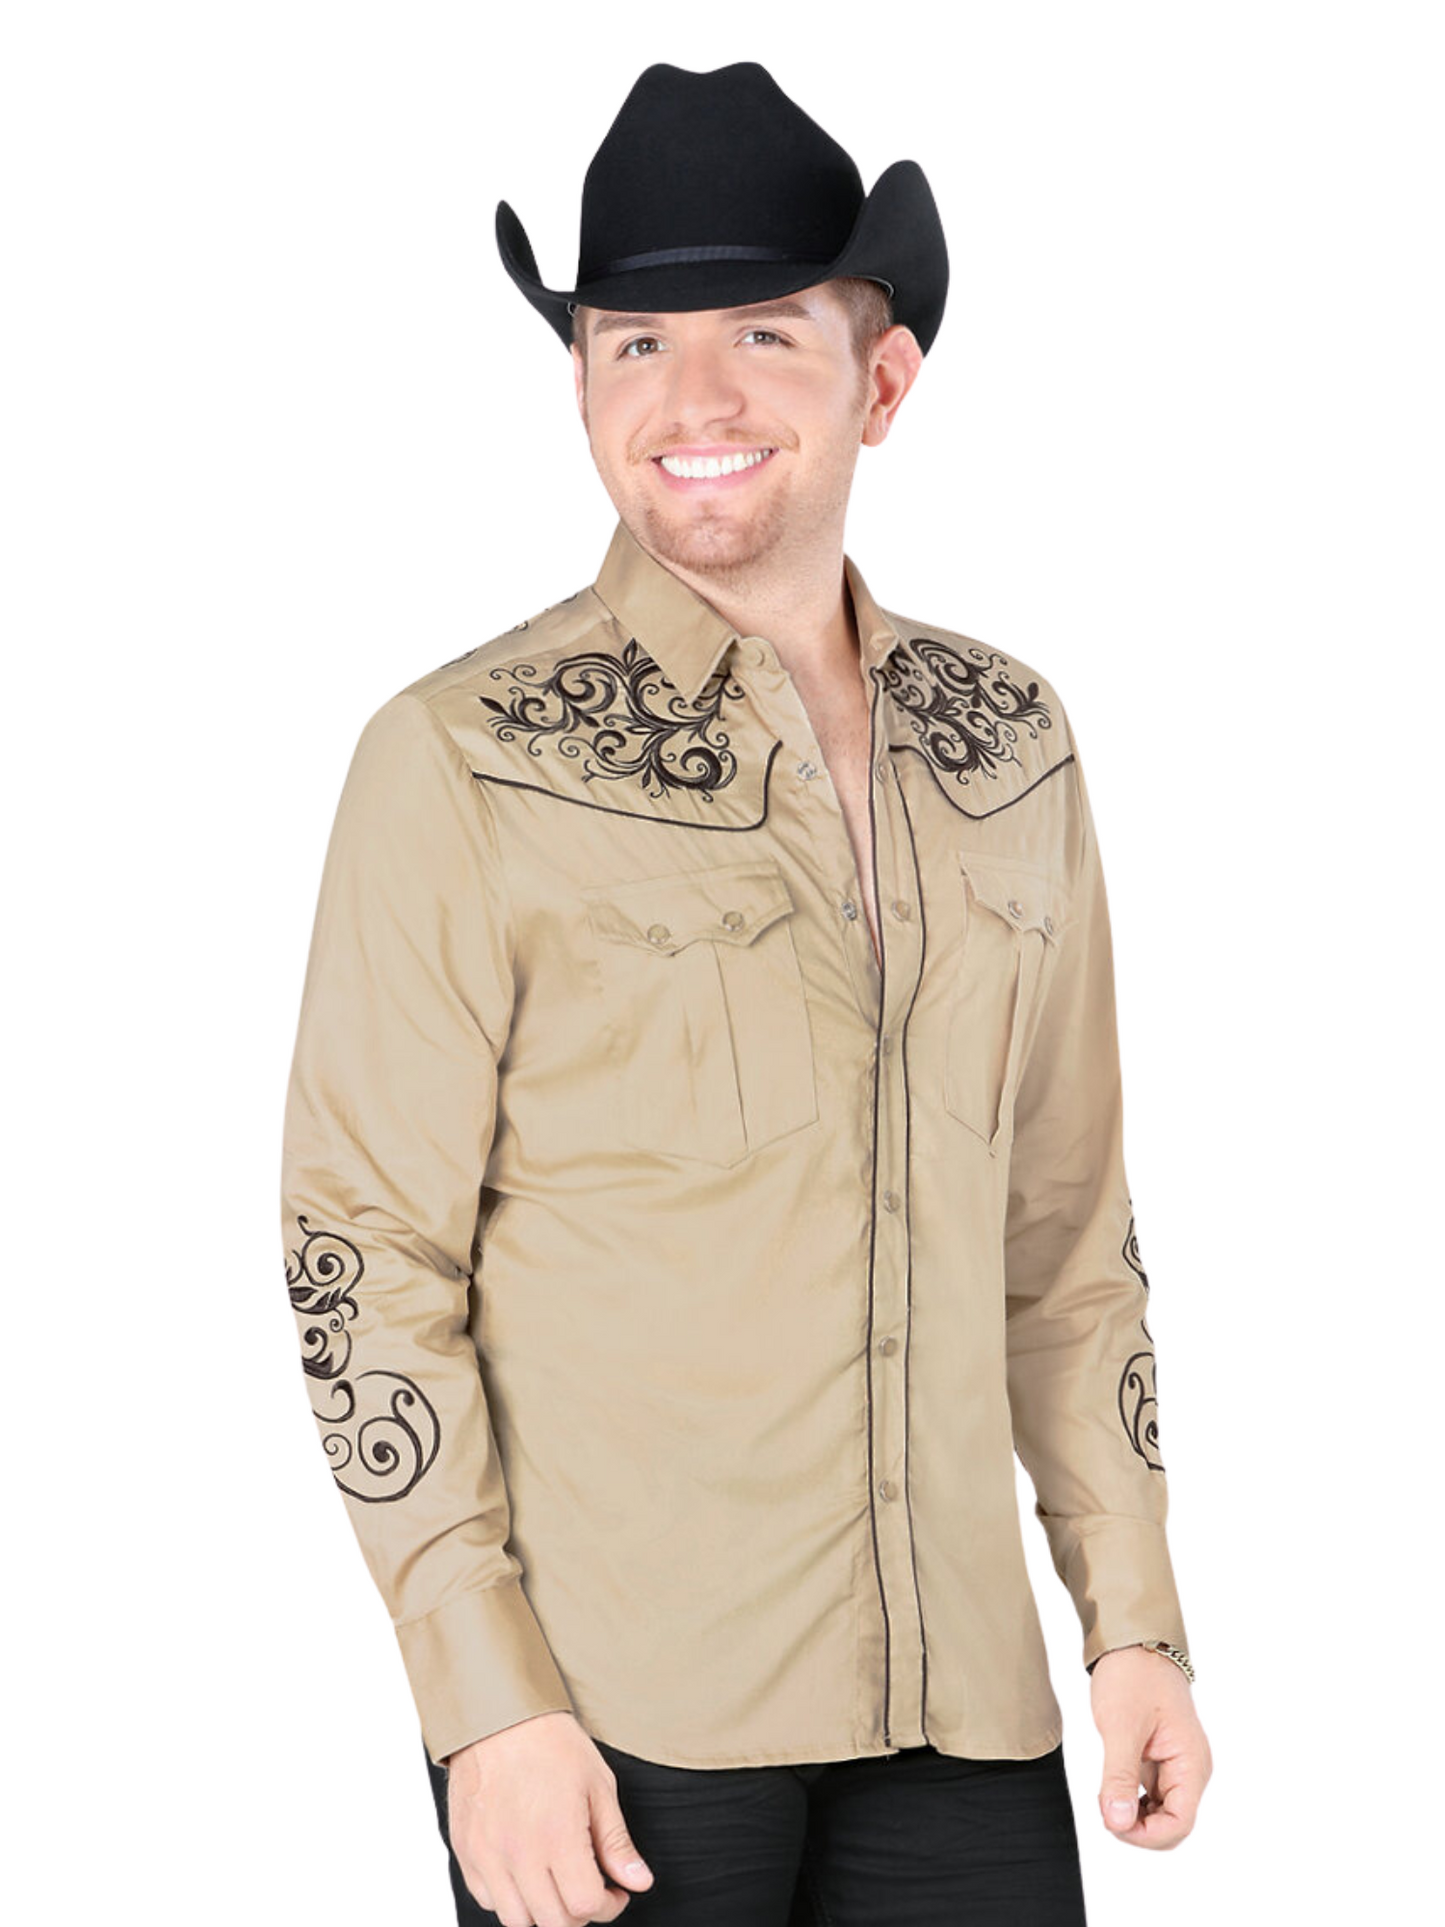 Embroidered Long Sleeve Denim Shirt for Men 'Montero' - ID: 3503 Western Shirt Montero Beige